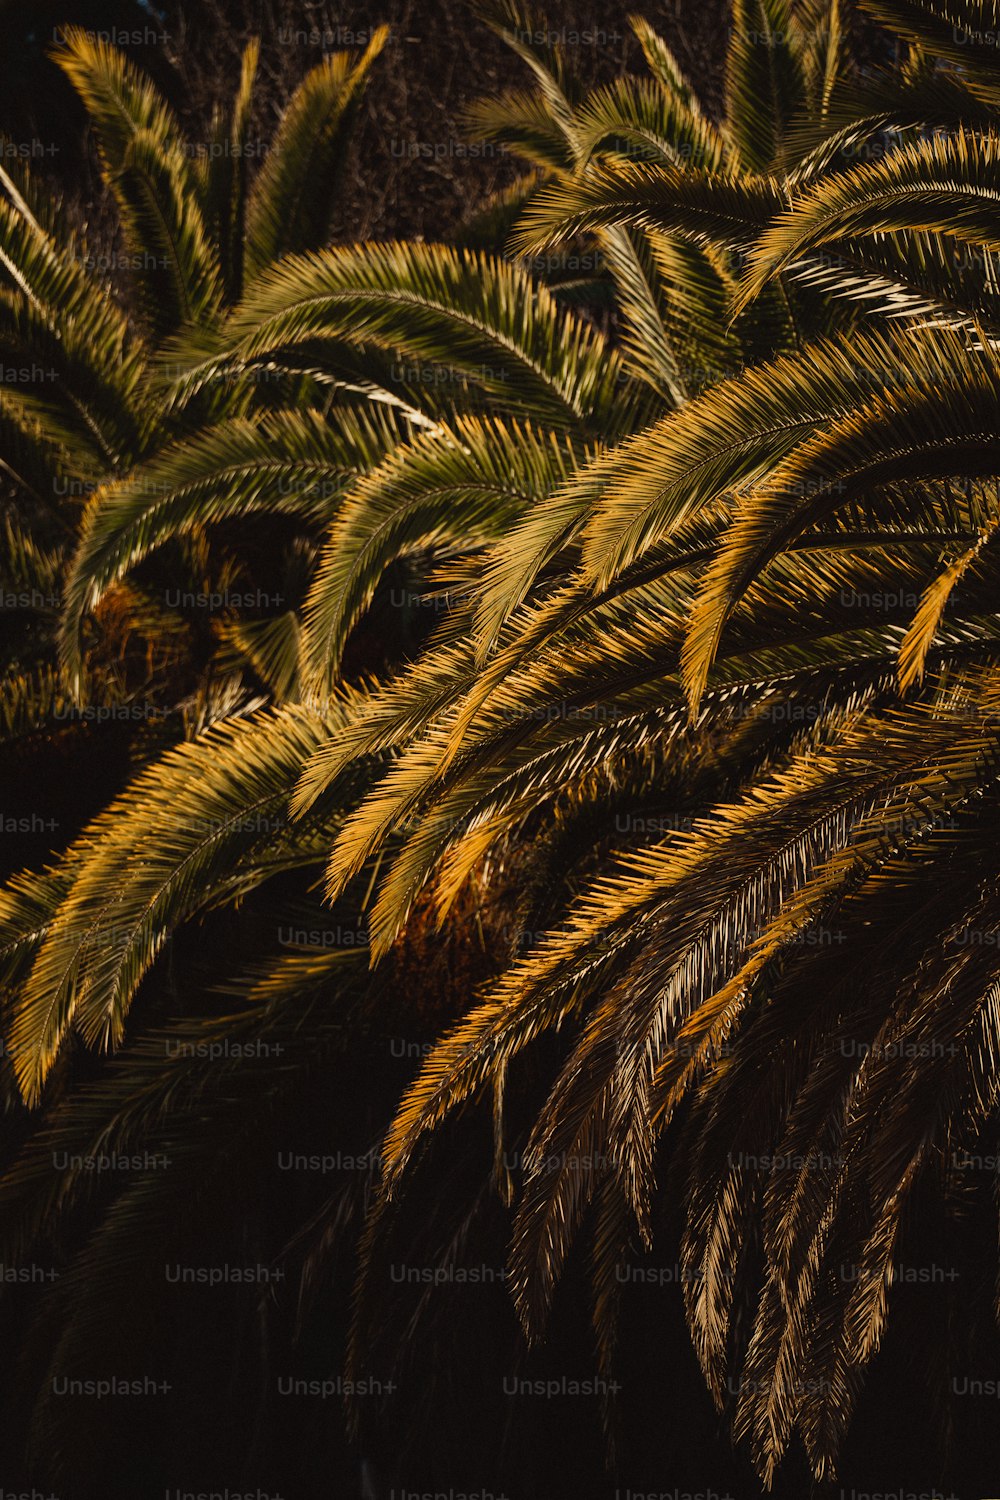 Un primer plano de una palmera con hojas amarillas y verdes